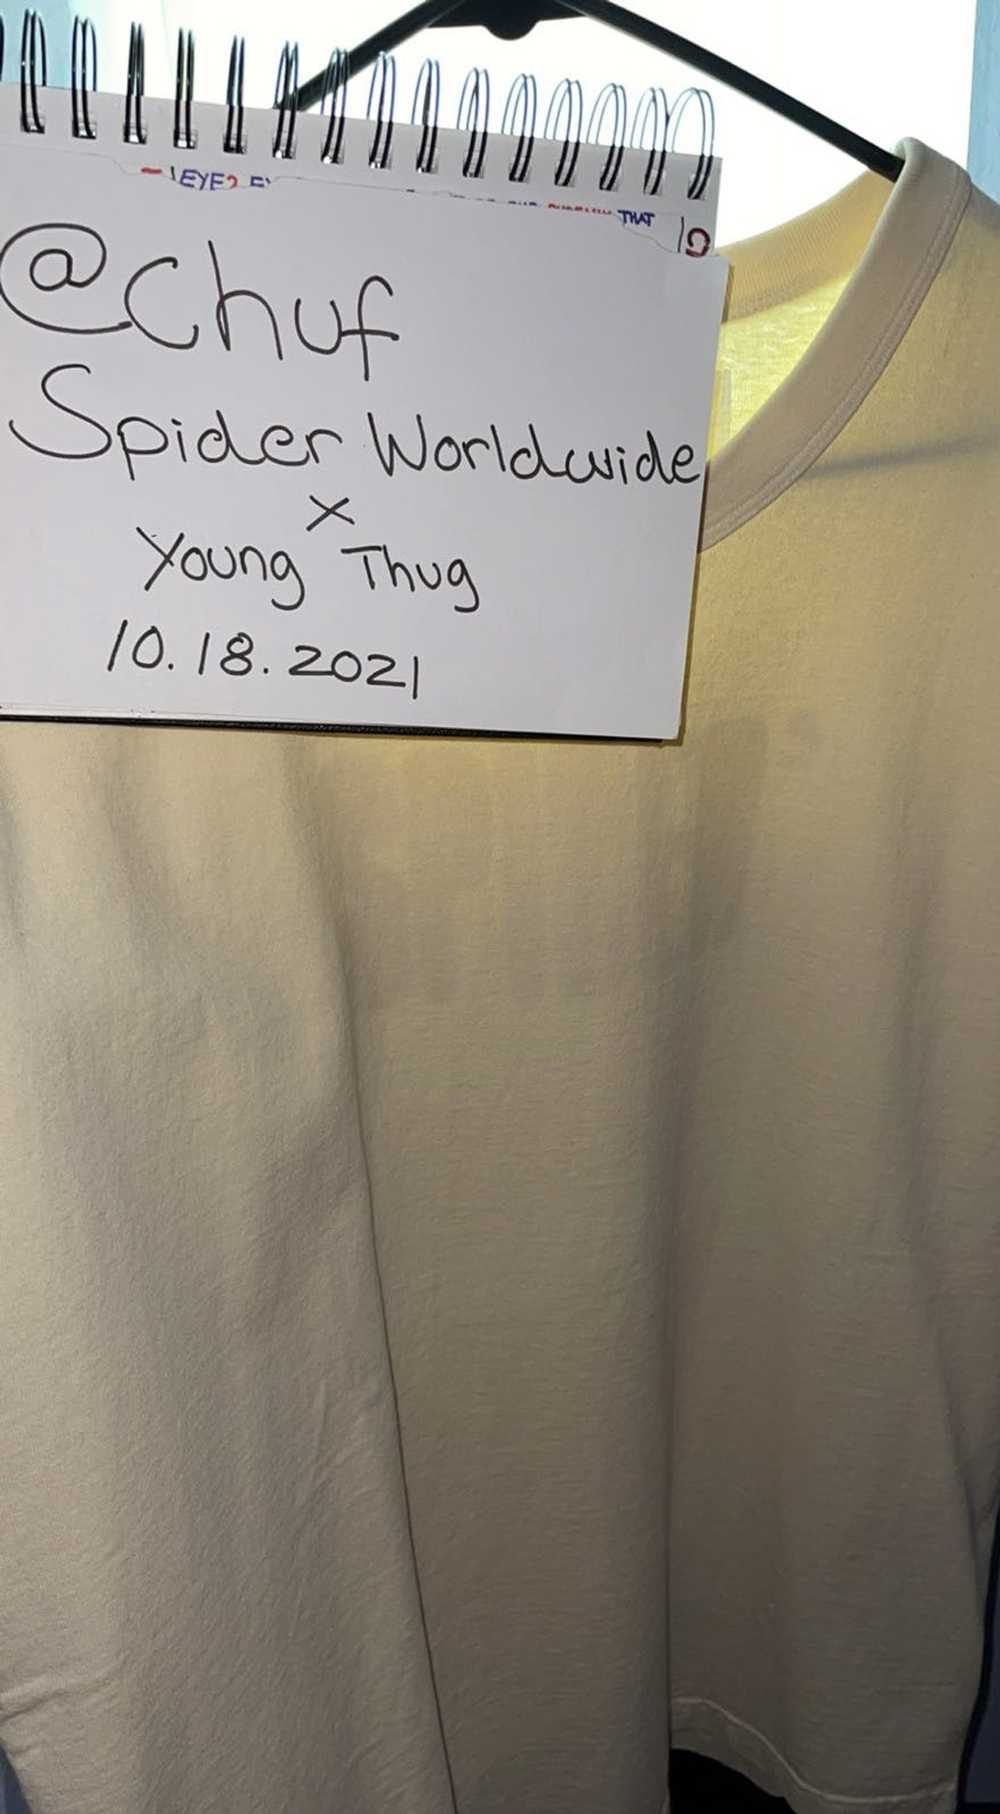 Essential Spider Worldwide T-shirt